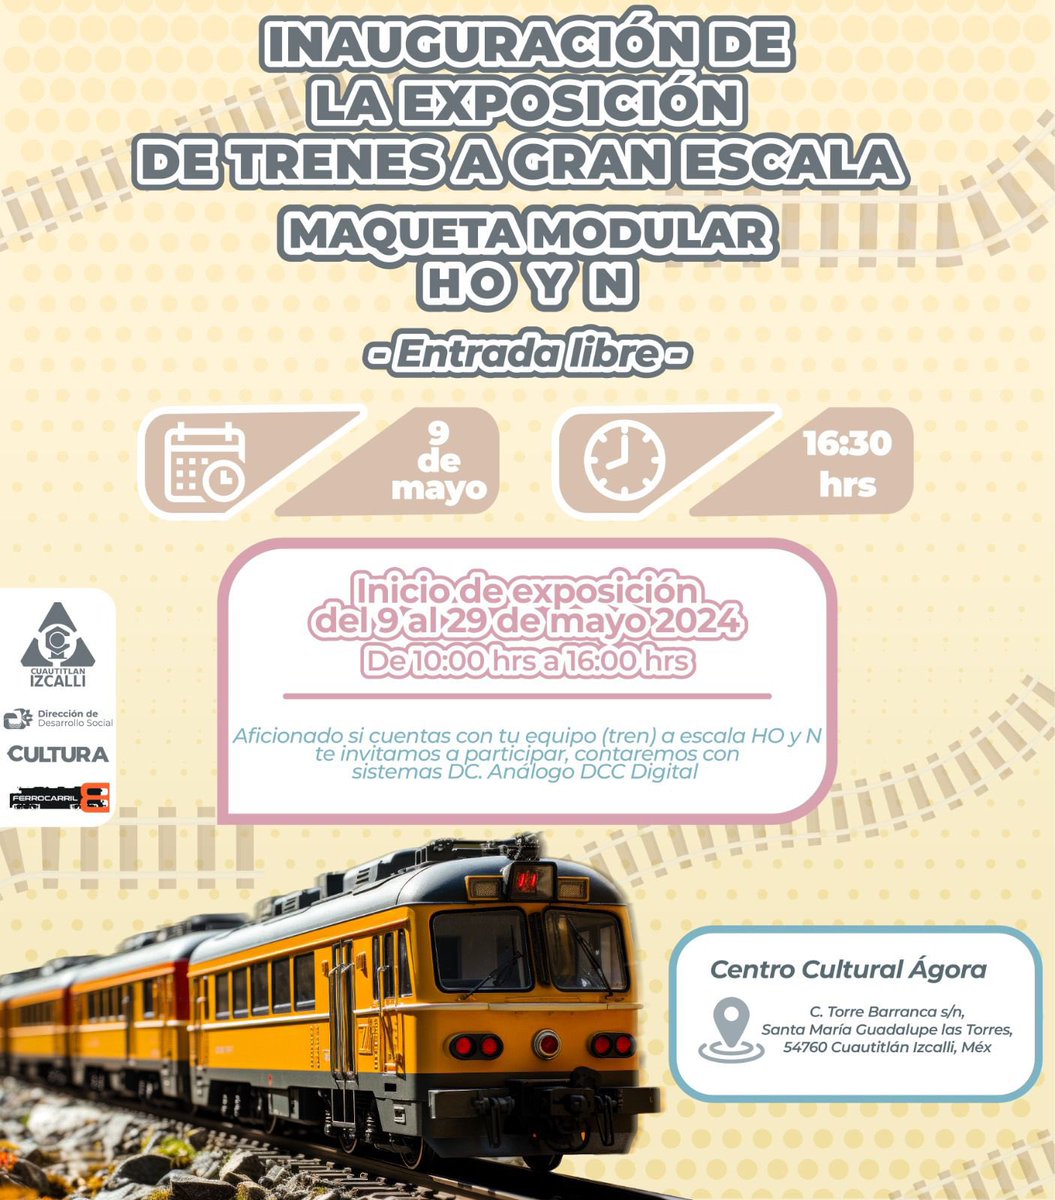 Sumérgete en la historia de los ferrocarriles y asiste a la Inauguración de la Exposición de Trenes a Gran Escala, que se llevará a cabo el 9 de mayo a las 16:30 horas en el Centro Cultural Ágora.